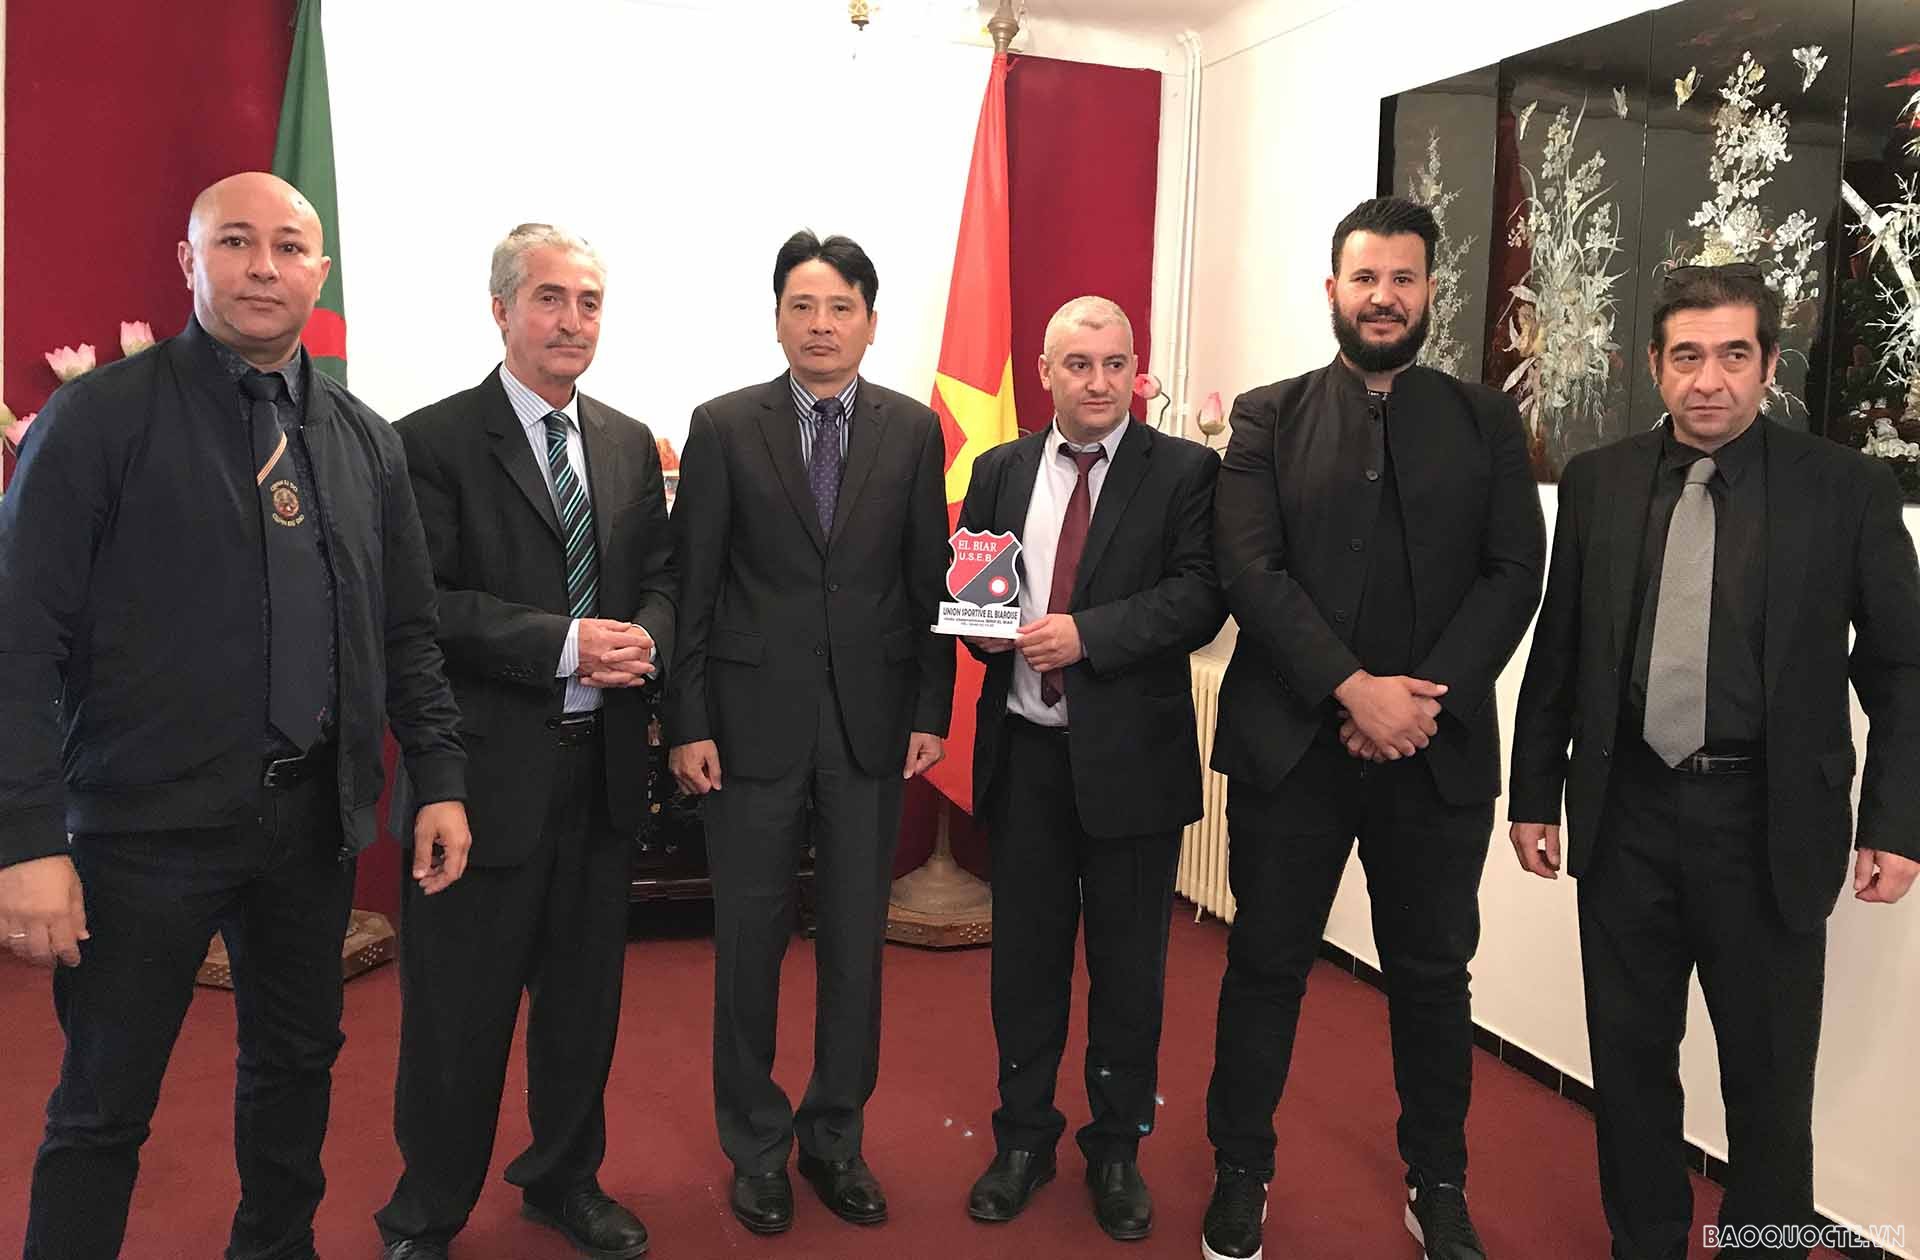 Đội tuyển Quán khí đạo Algeria tặng kỷ niệm chương cho Đại sứ Nguyễn Thành Vinh.